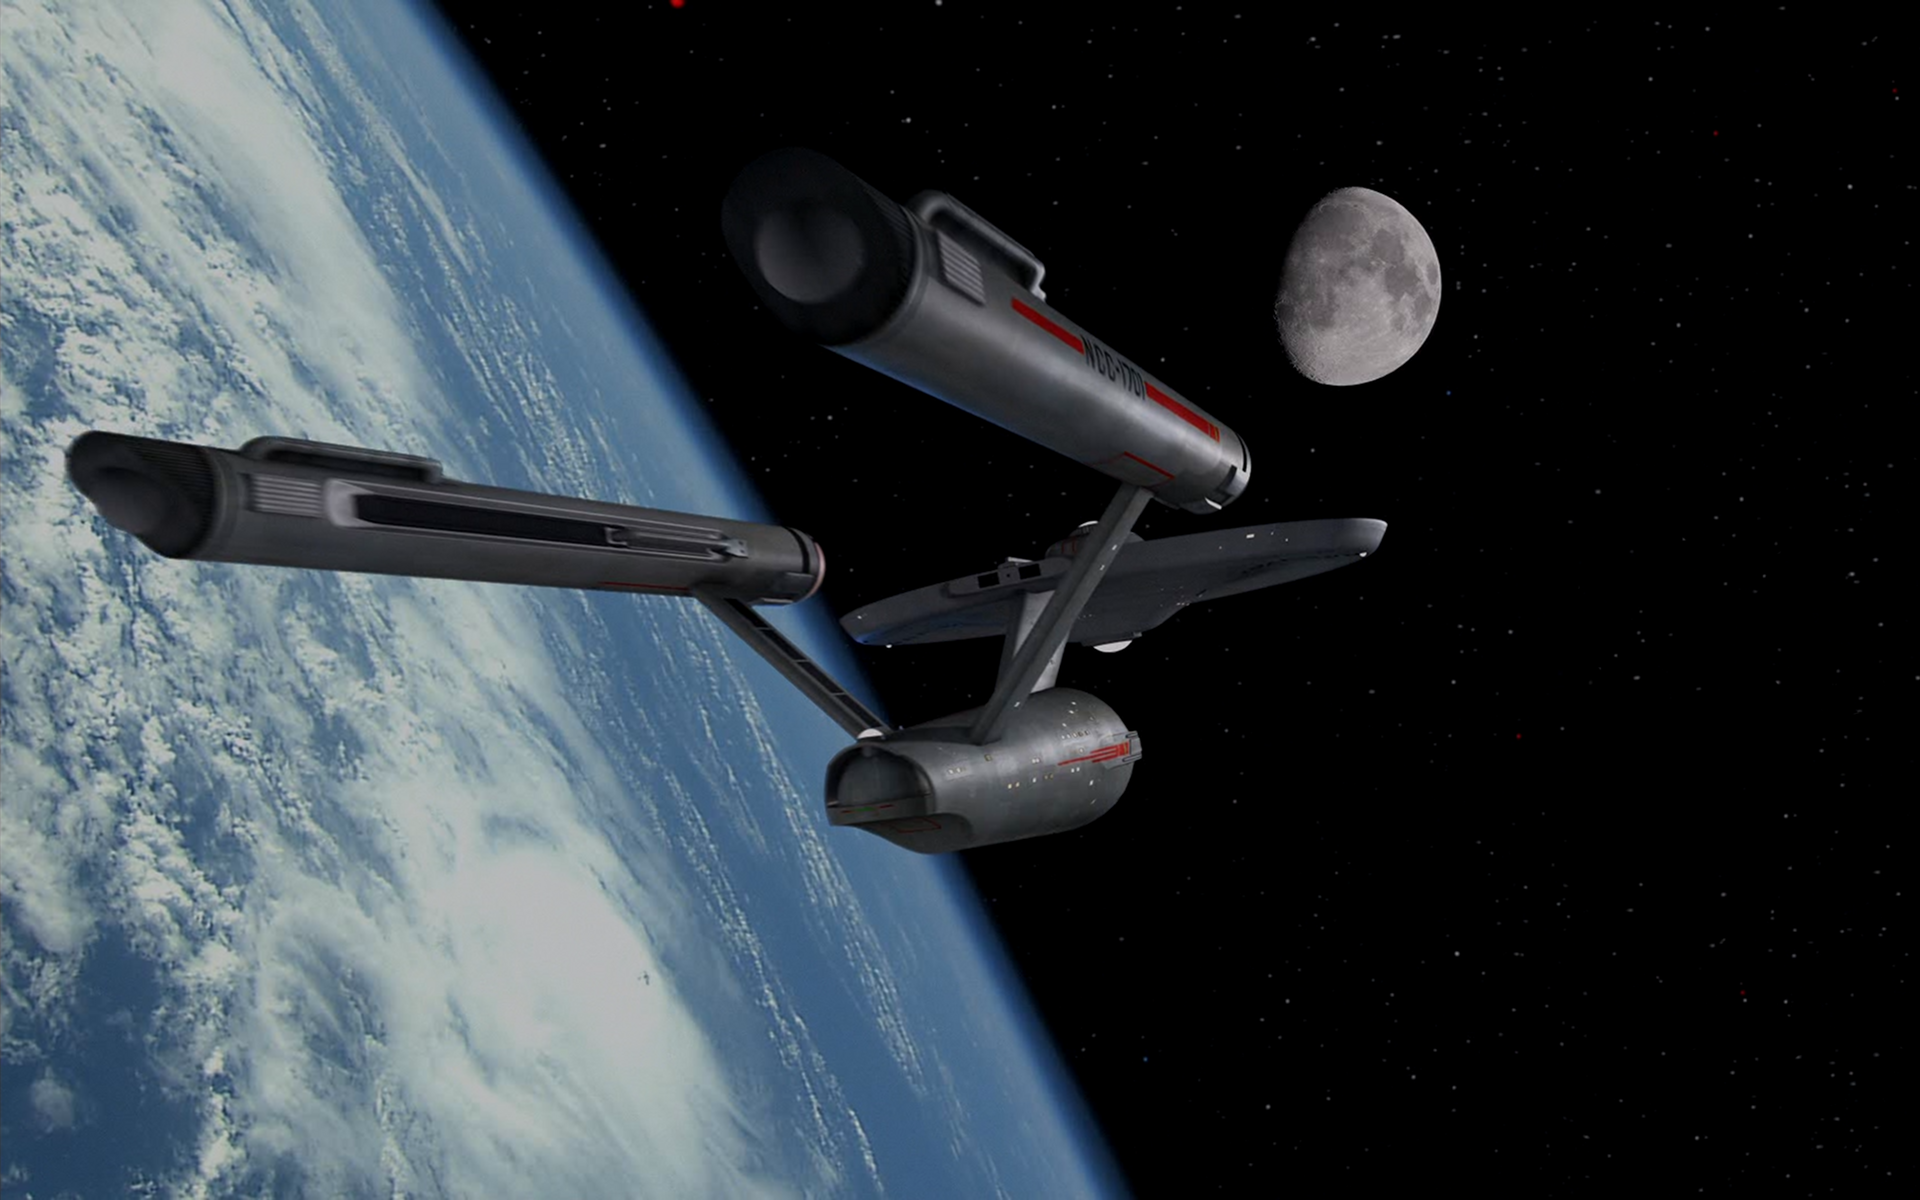 Uss Enterprise Star Trek Earth